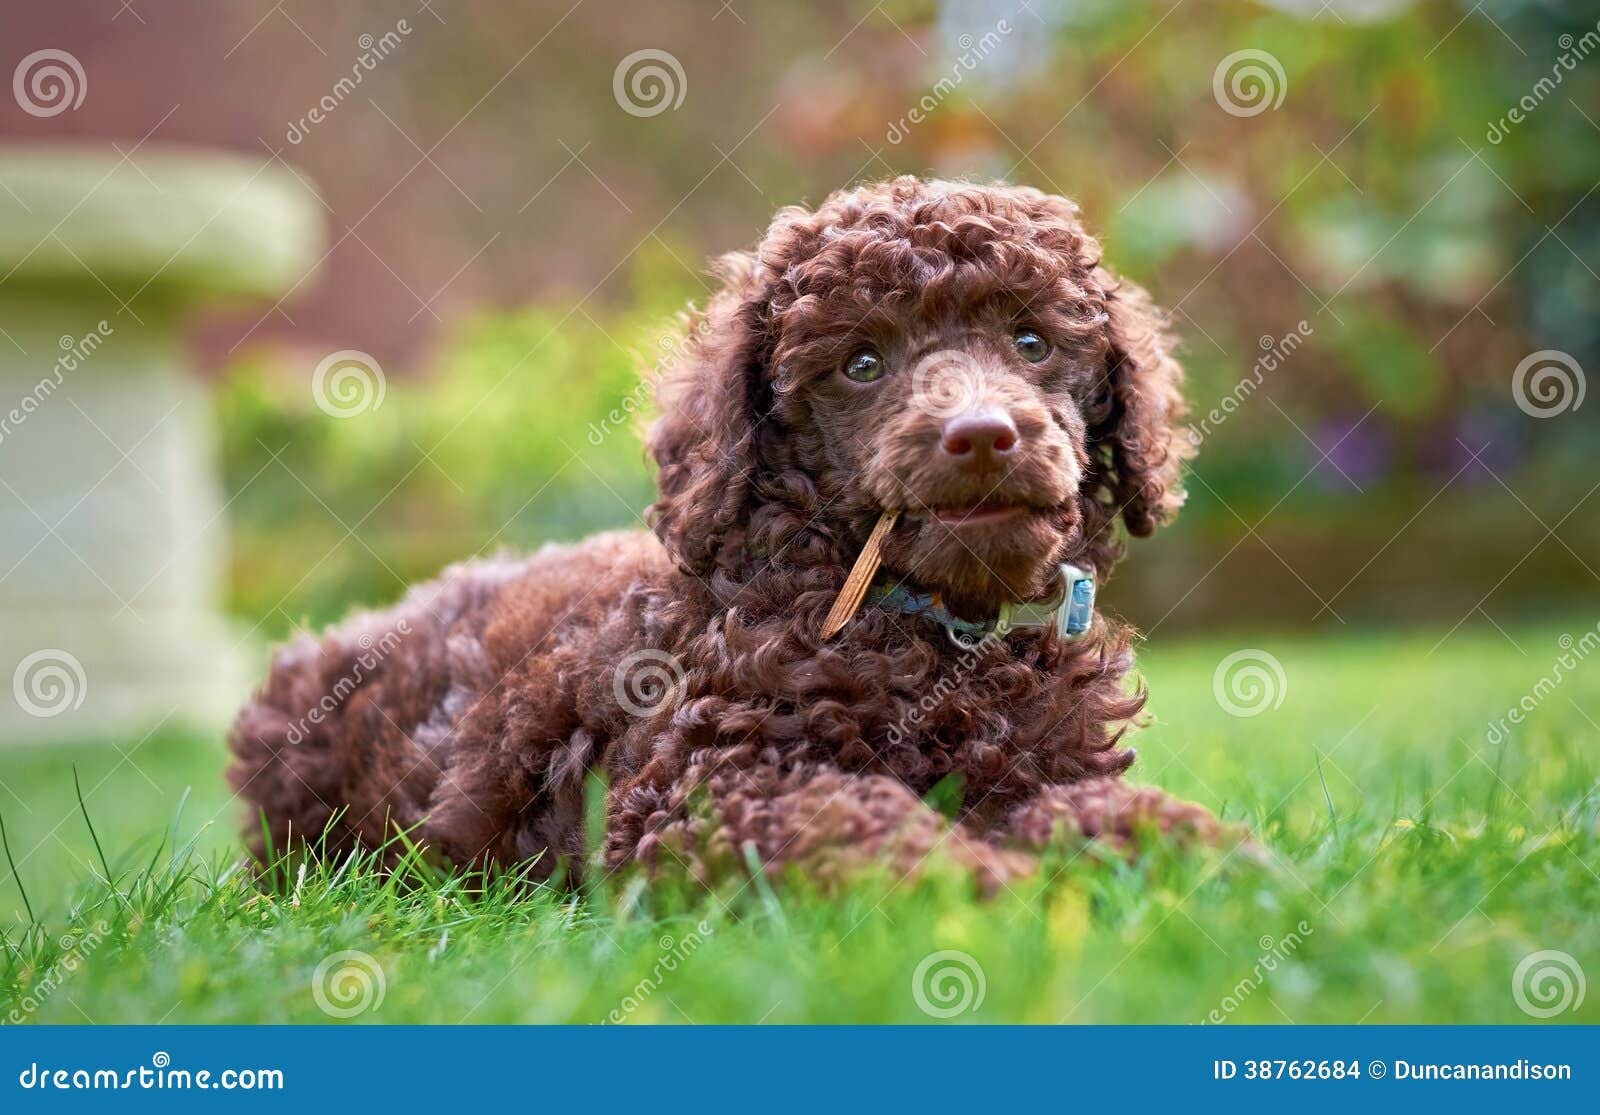 miniature poodle puppy